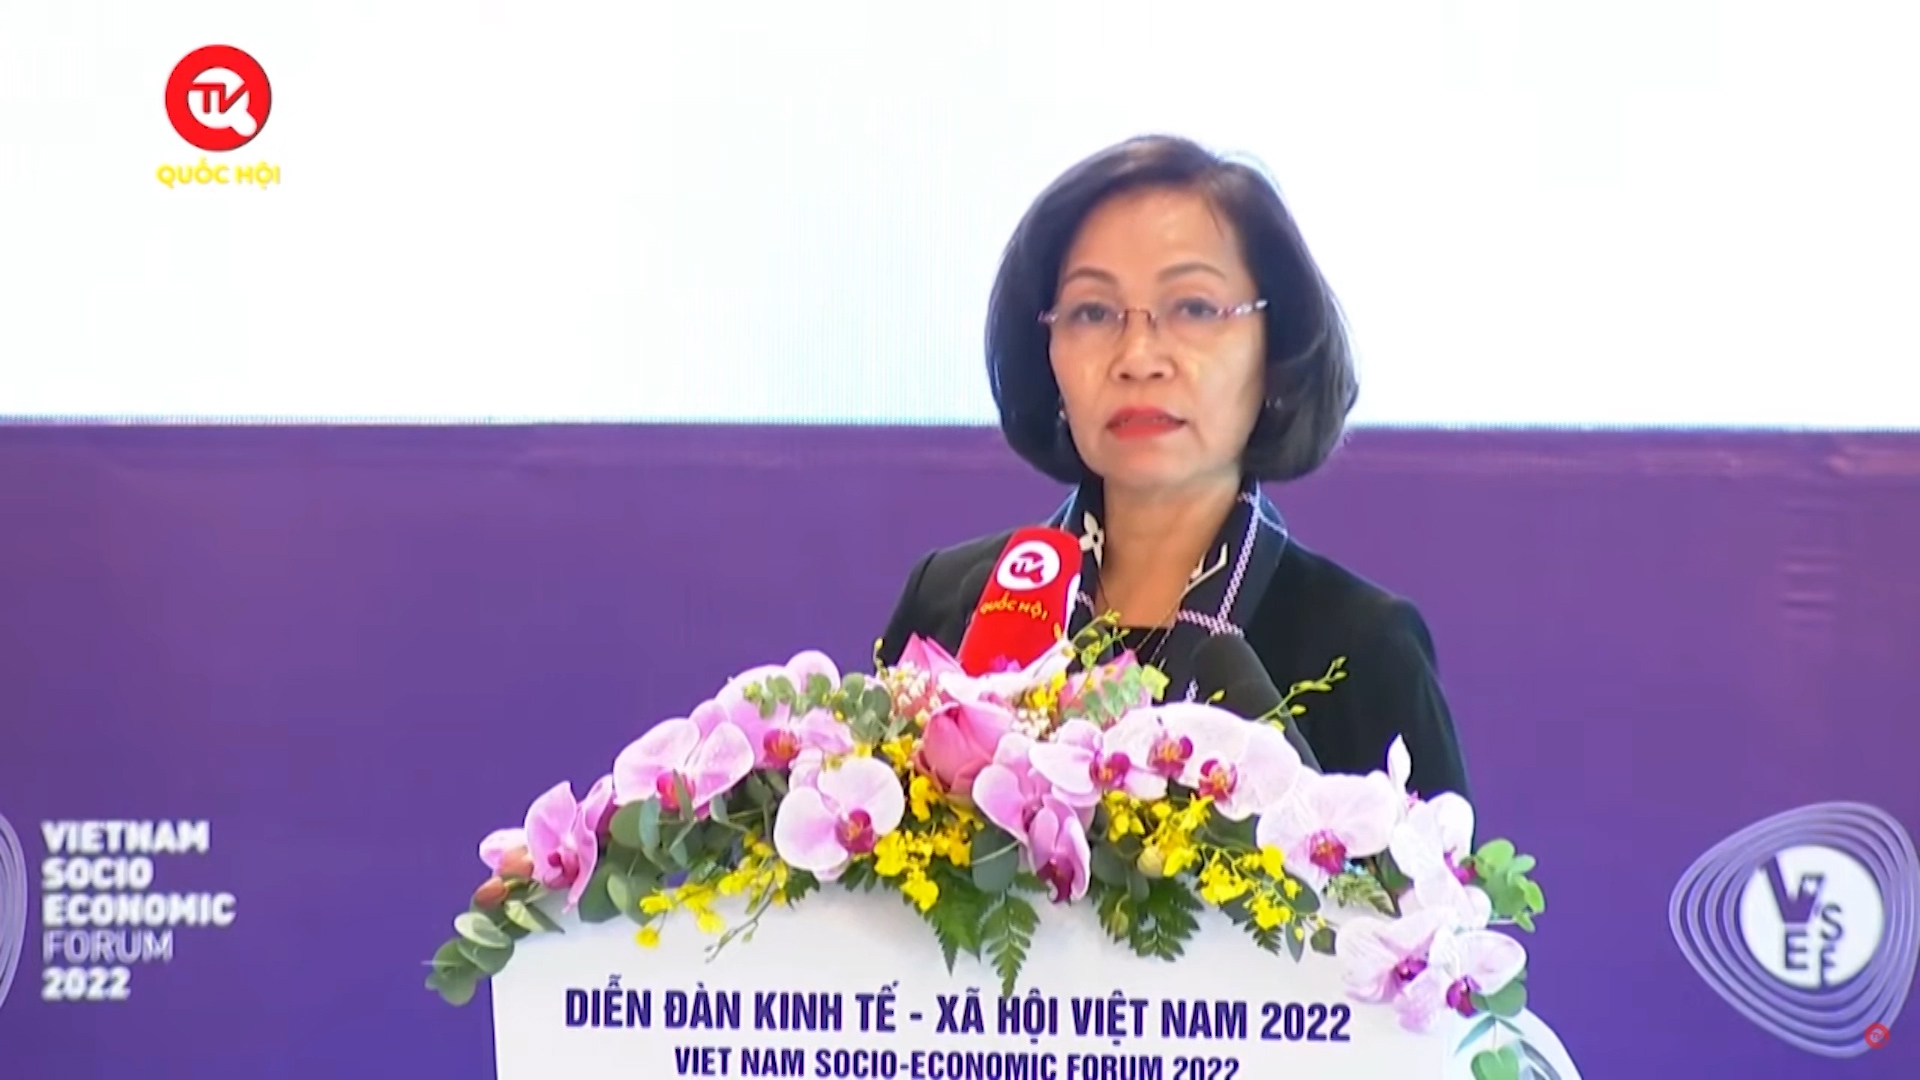 Diễn đàn Kinh tế - Xã hội Việt Nam VSEF 2022: Deloitte Việt Nam gợi ý 4 nhóm hành động giúp doanh nghiệp ứng phó rủi ro